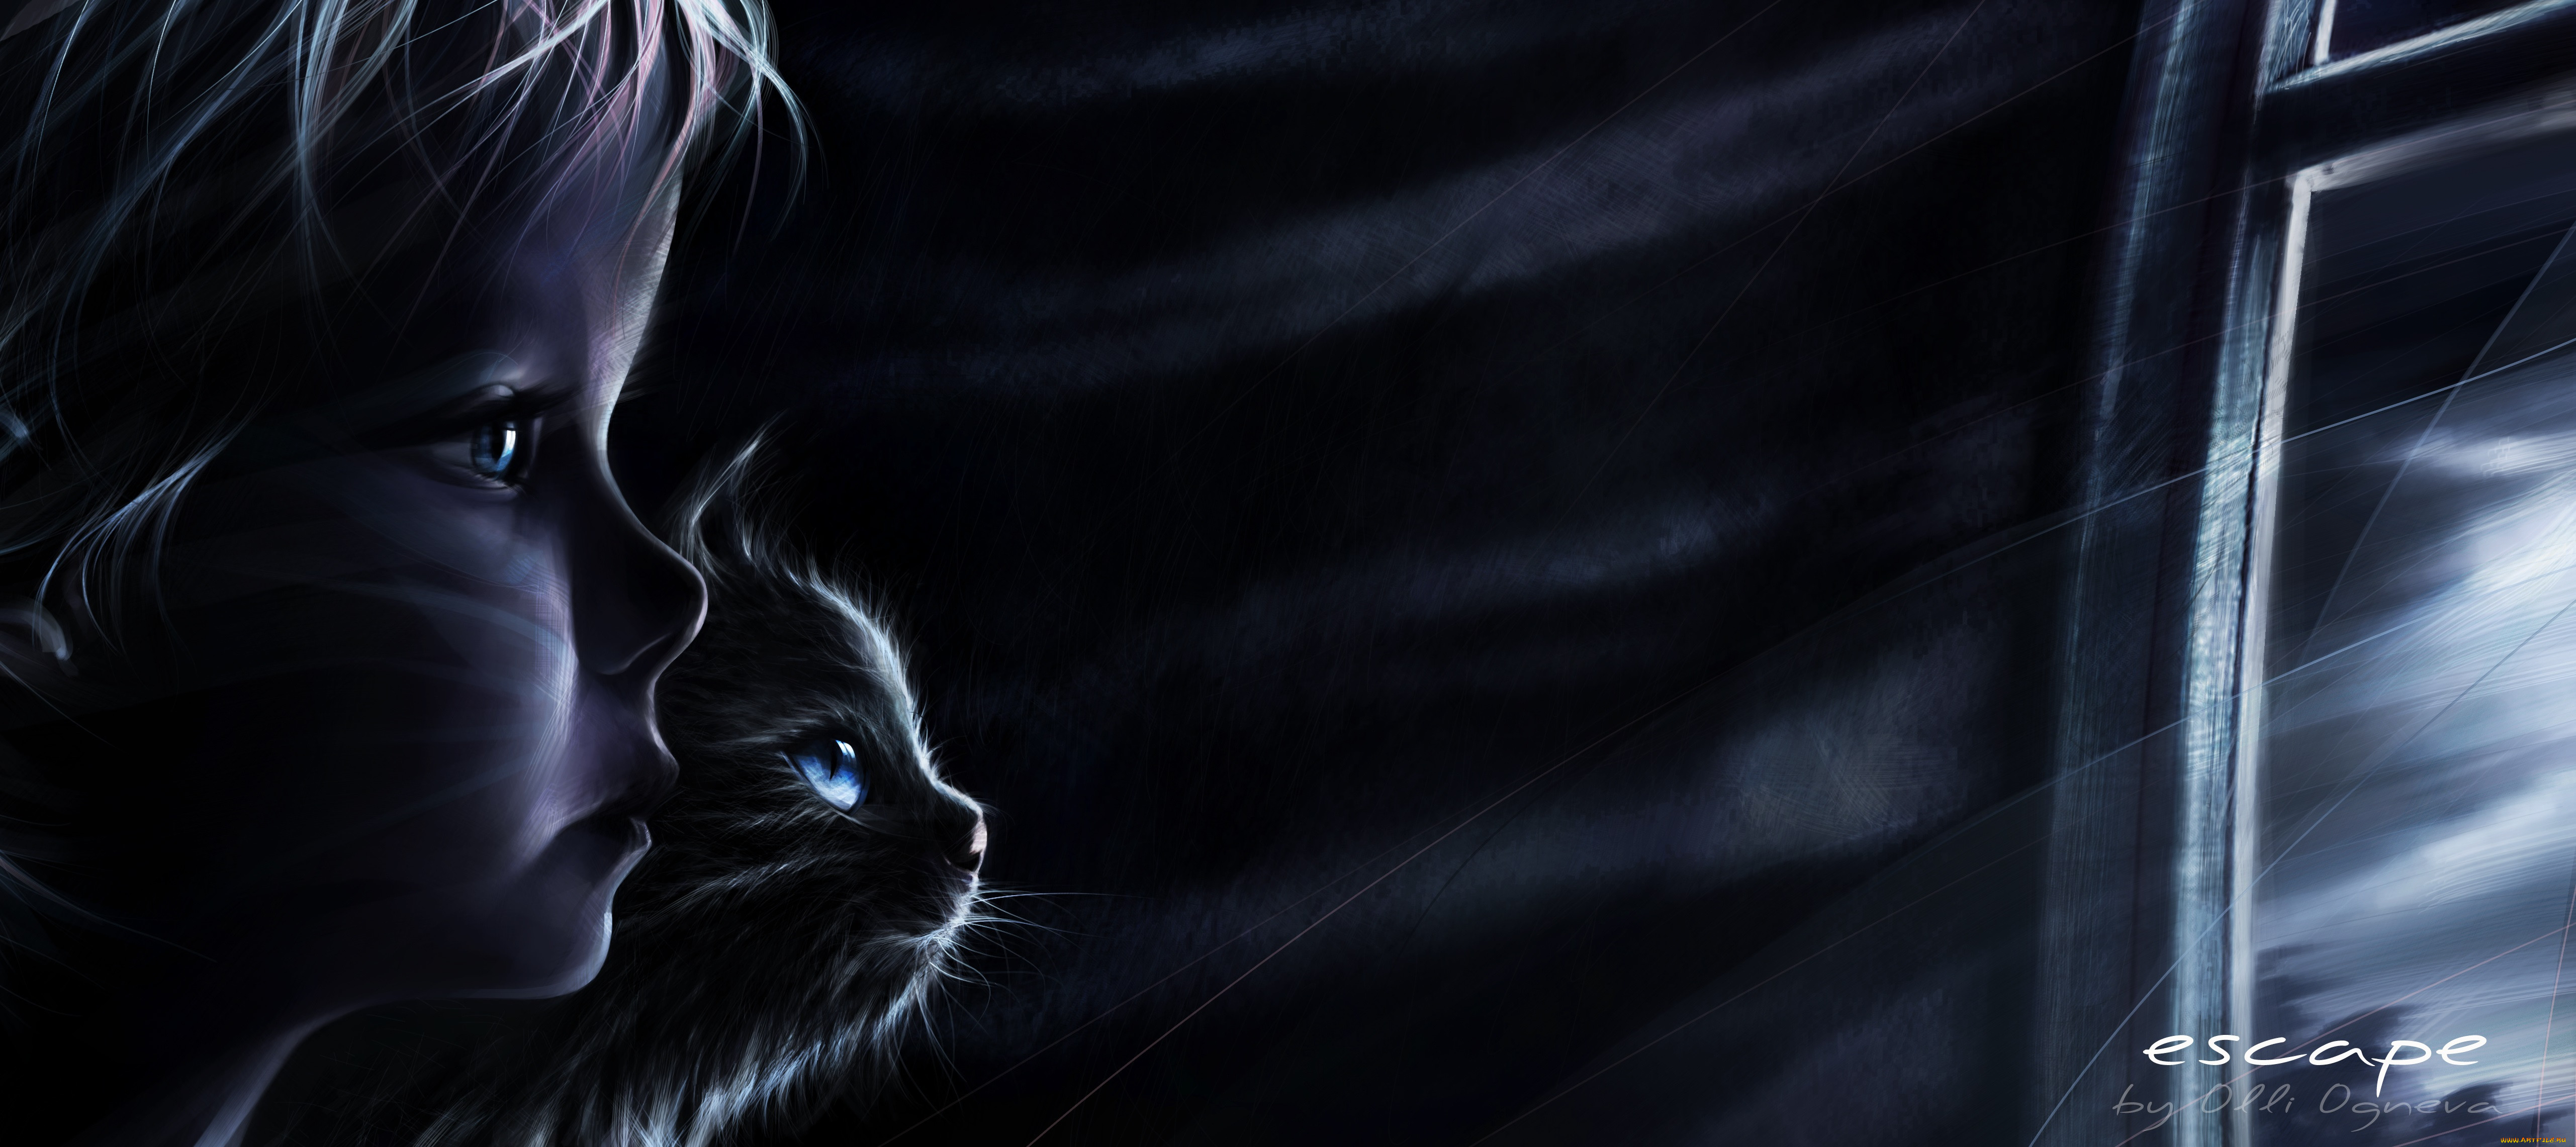 Nightcat 1. Мистические кошки. Ночной кот. Завораживающие картинки на рабочий стол. Девушка и кот в темноте.